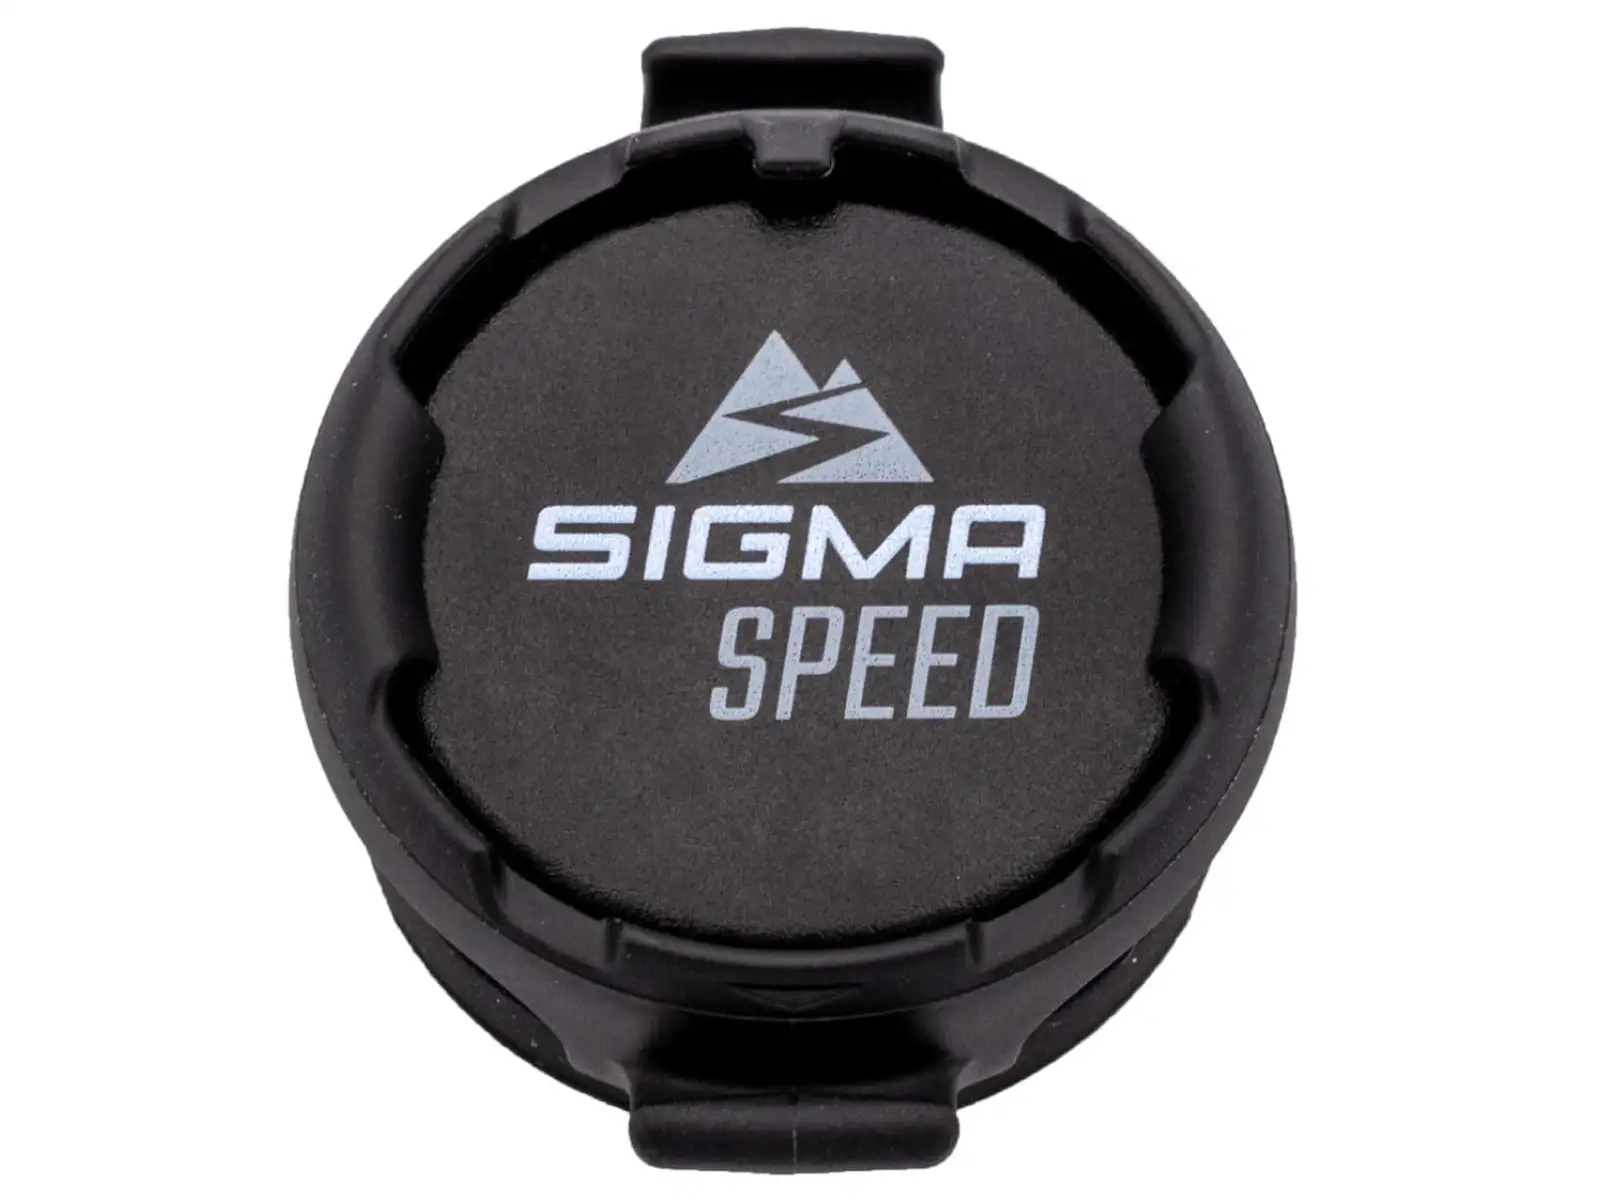 Sigma Duo Magnetless bezdrátový snímač rychlosti